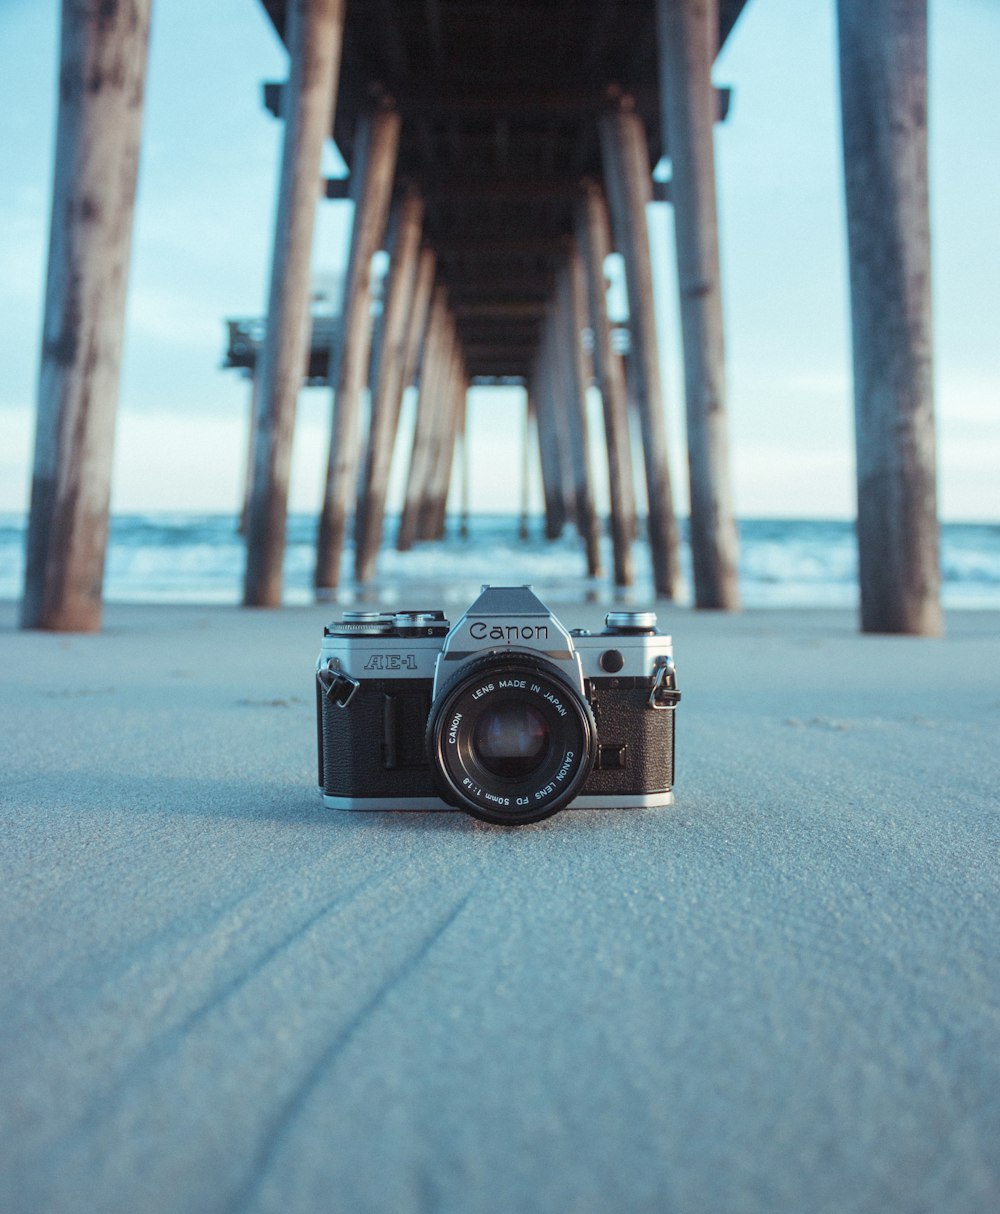 schwarz-graue Canon AE-1 Kamera auf grauem Sand unter braunem Dock in der Nähe eines Gewässers bei Tag